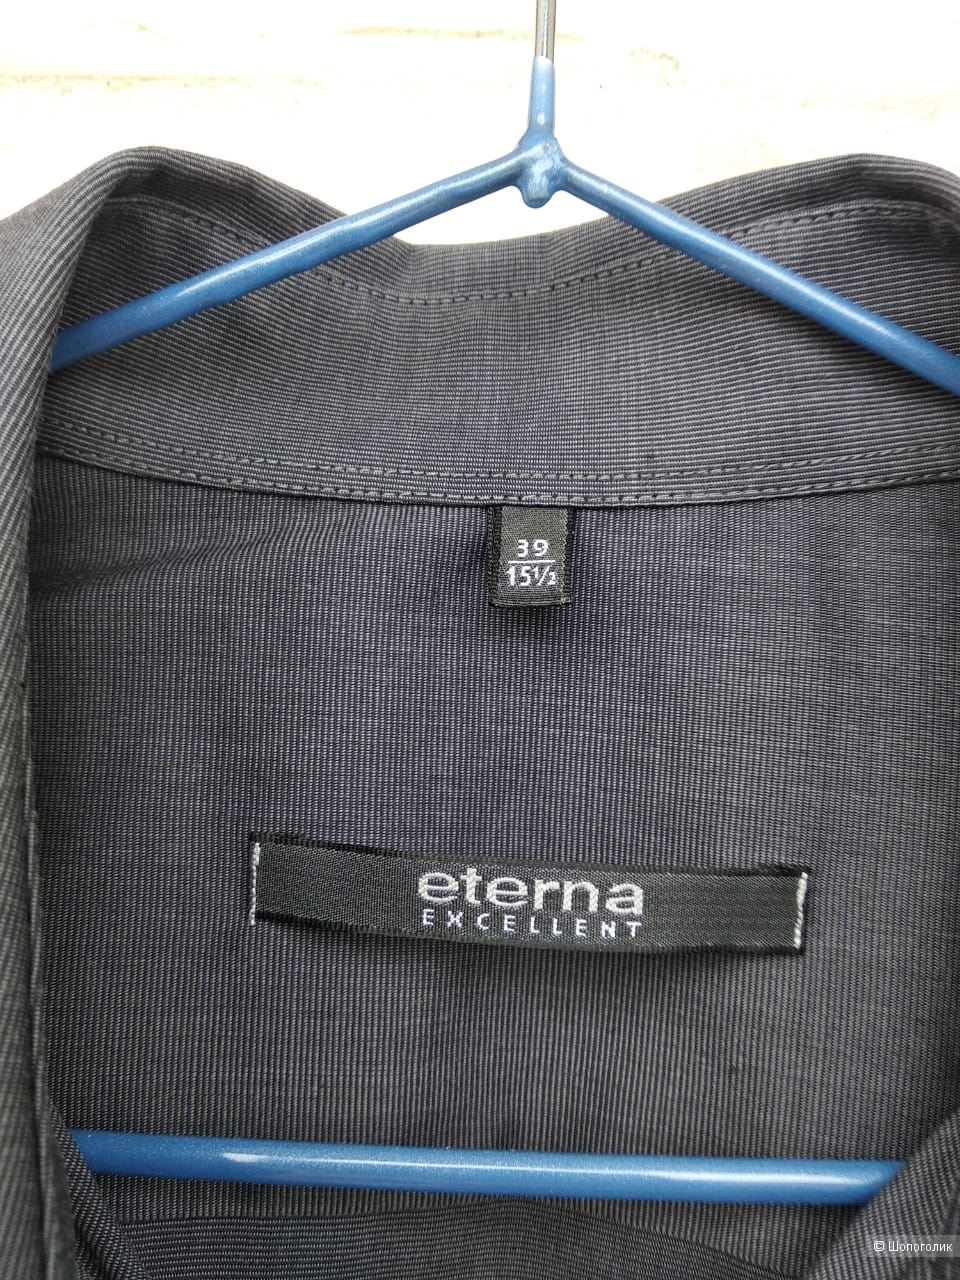 Рубашка Eterna Excellent, размер 15,5", 39